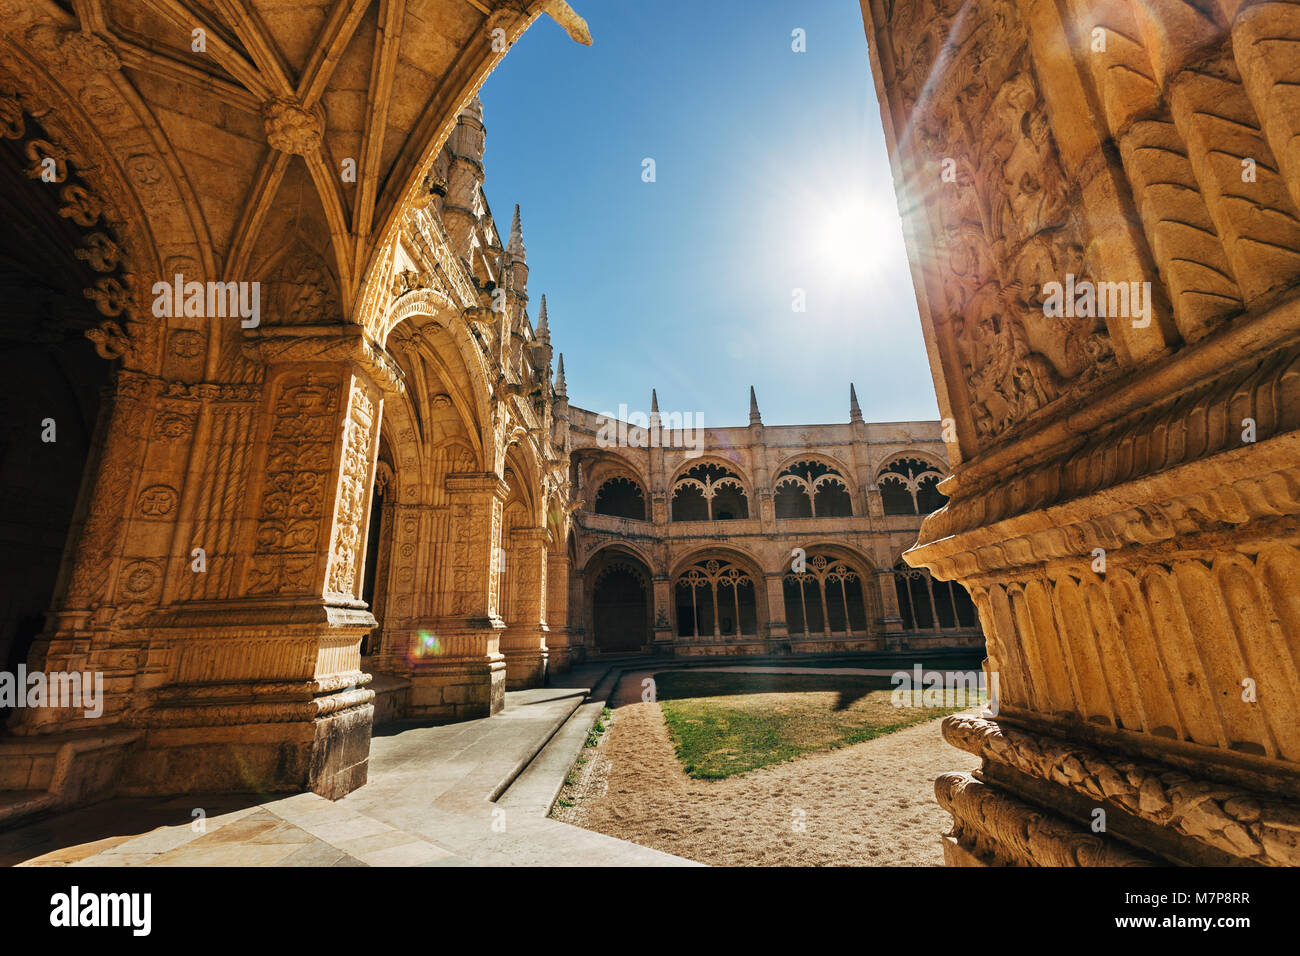 Architektur von Hieronymus-kloster in Lissabon, Portugal. Manuelinischen Stil. Stockfoto